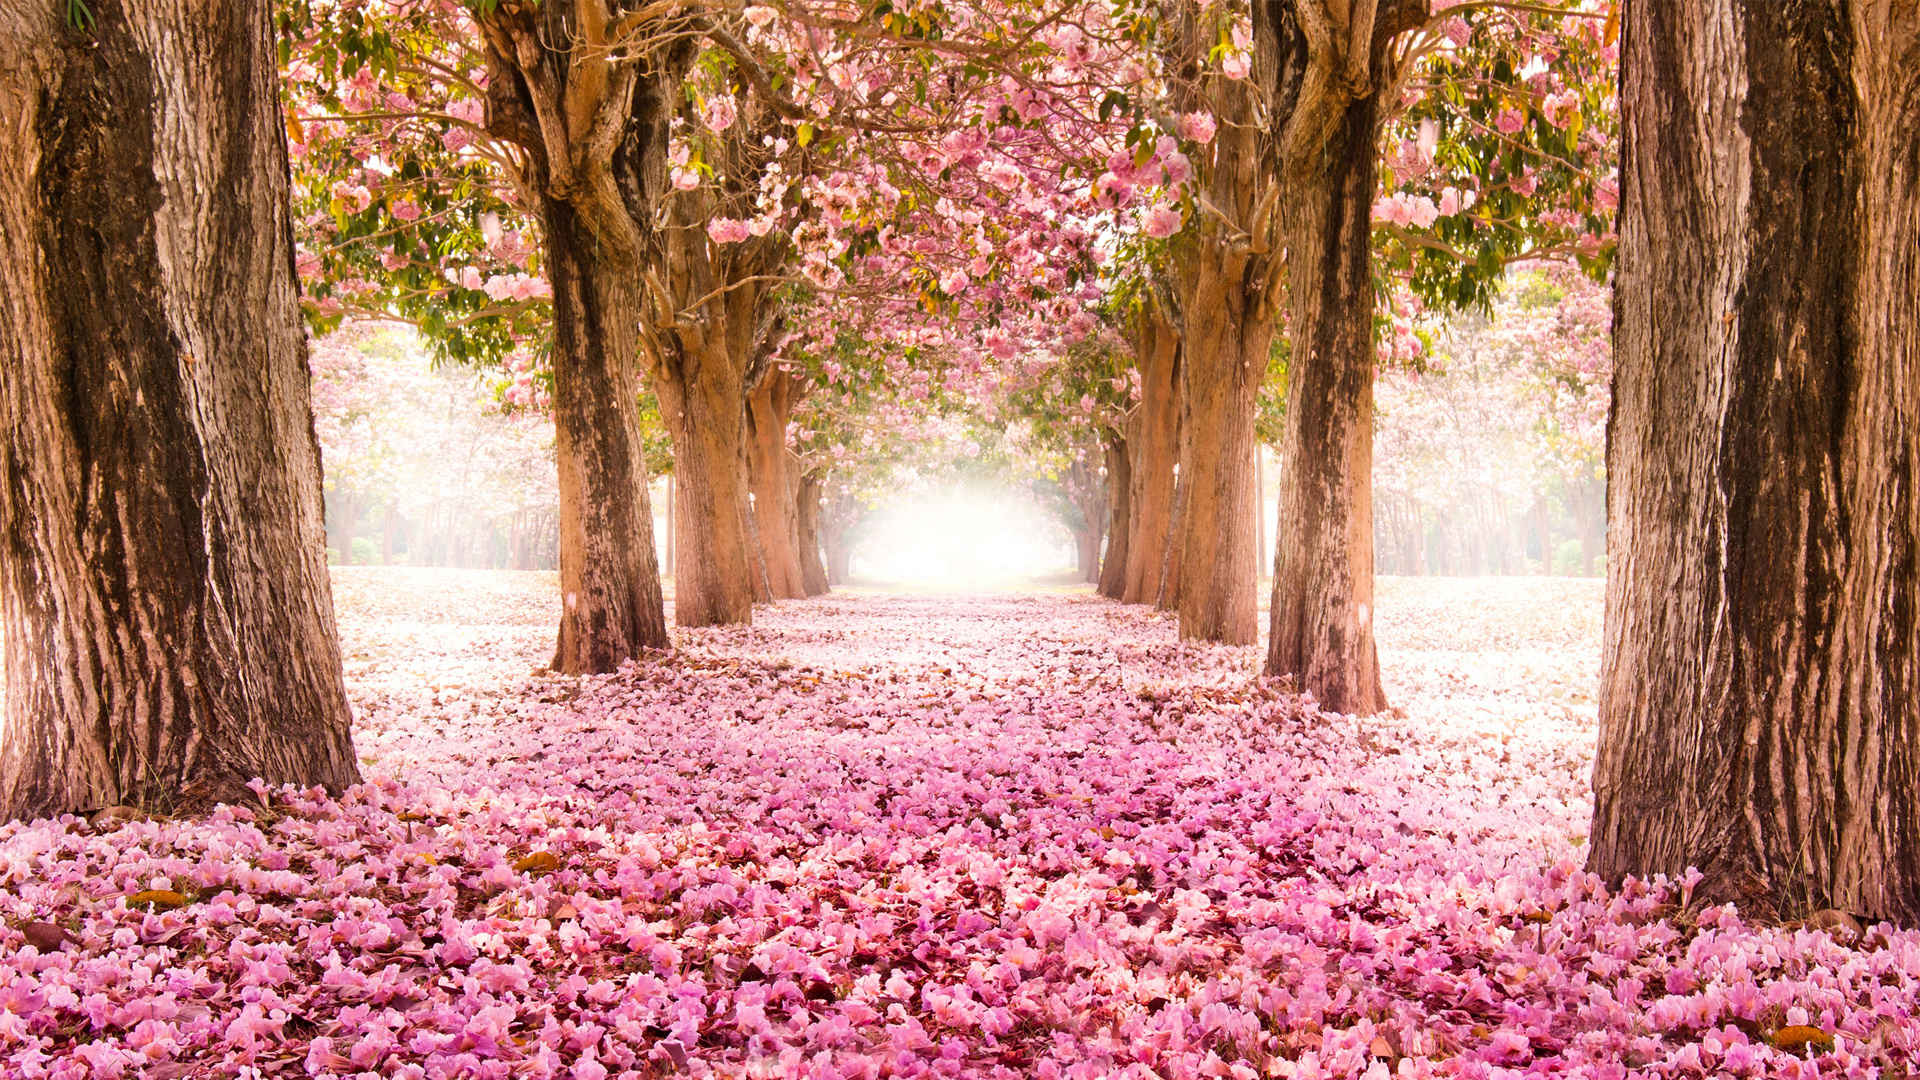 粉红色的樱花小道风景桌面壁纸-